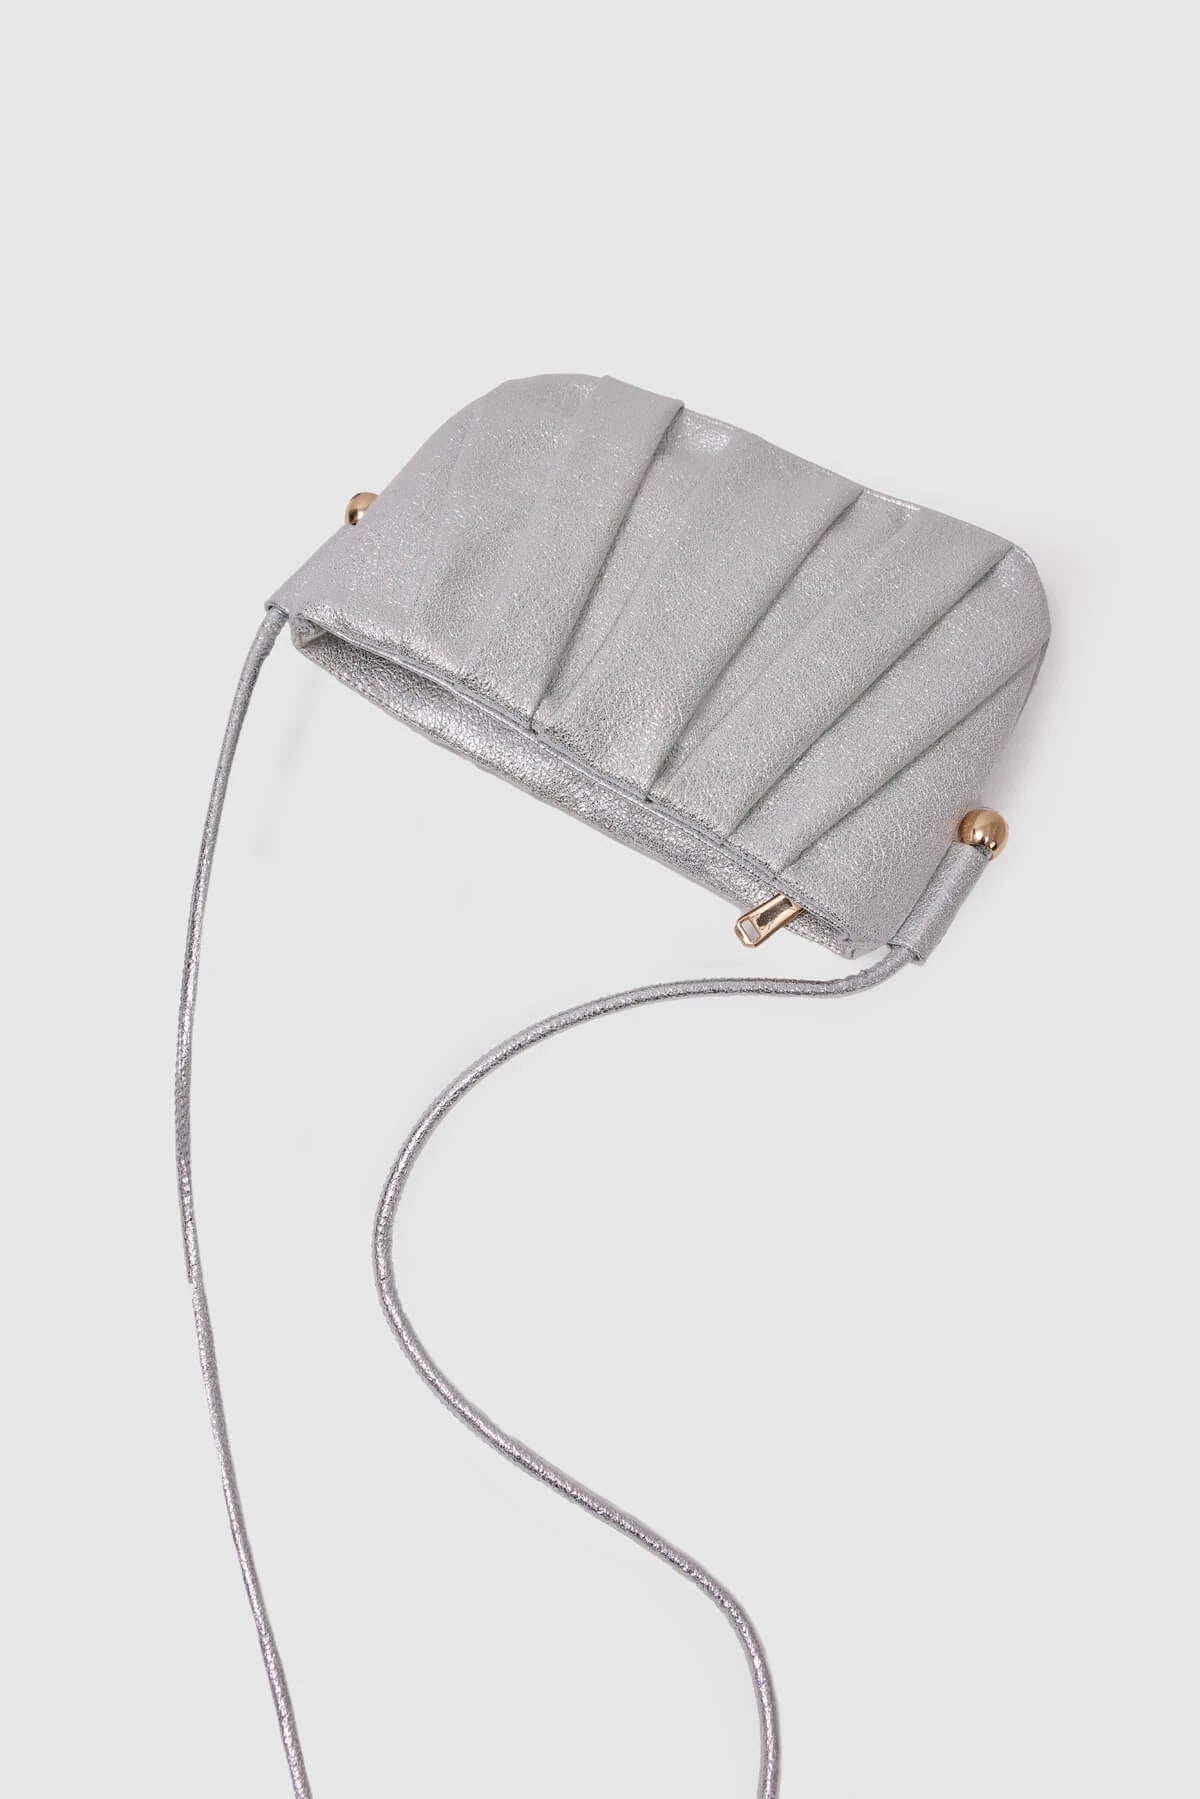 Metallic Long Strap Shoulder Bag shoulder bag LUNARITY GARAGE White  